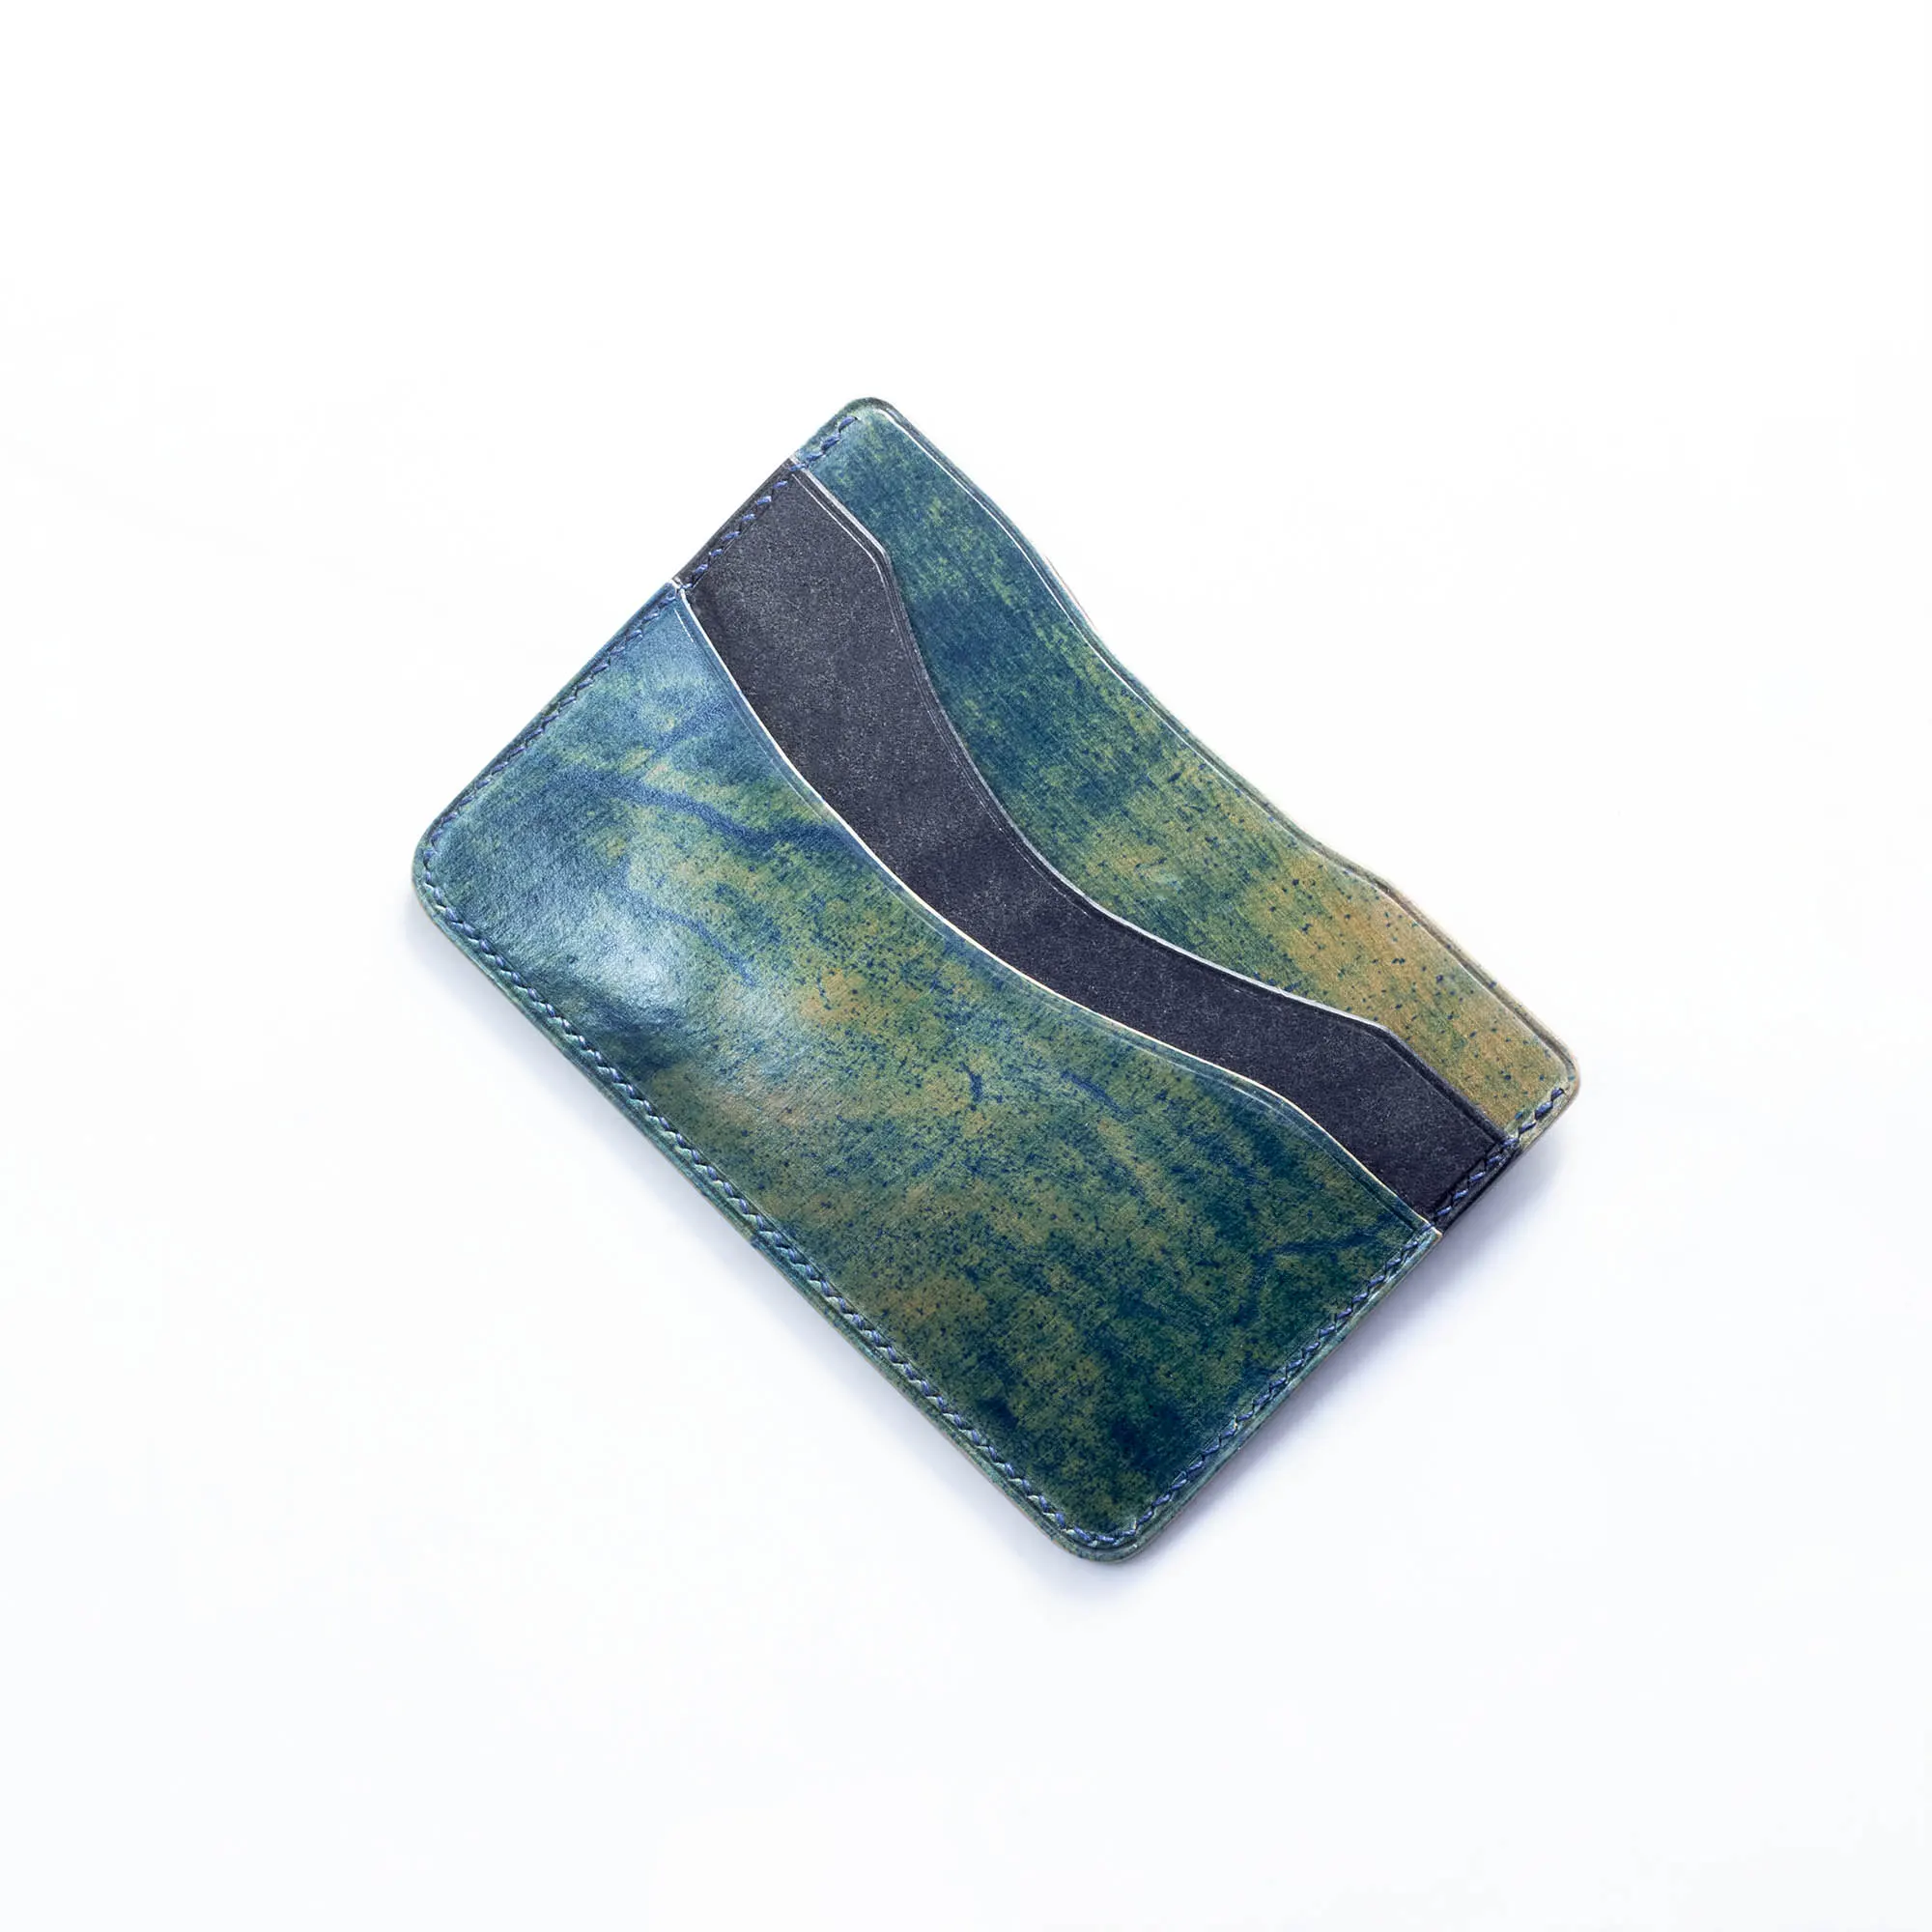 possala designs handmade shell cordovan artisan wallet